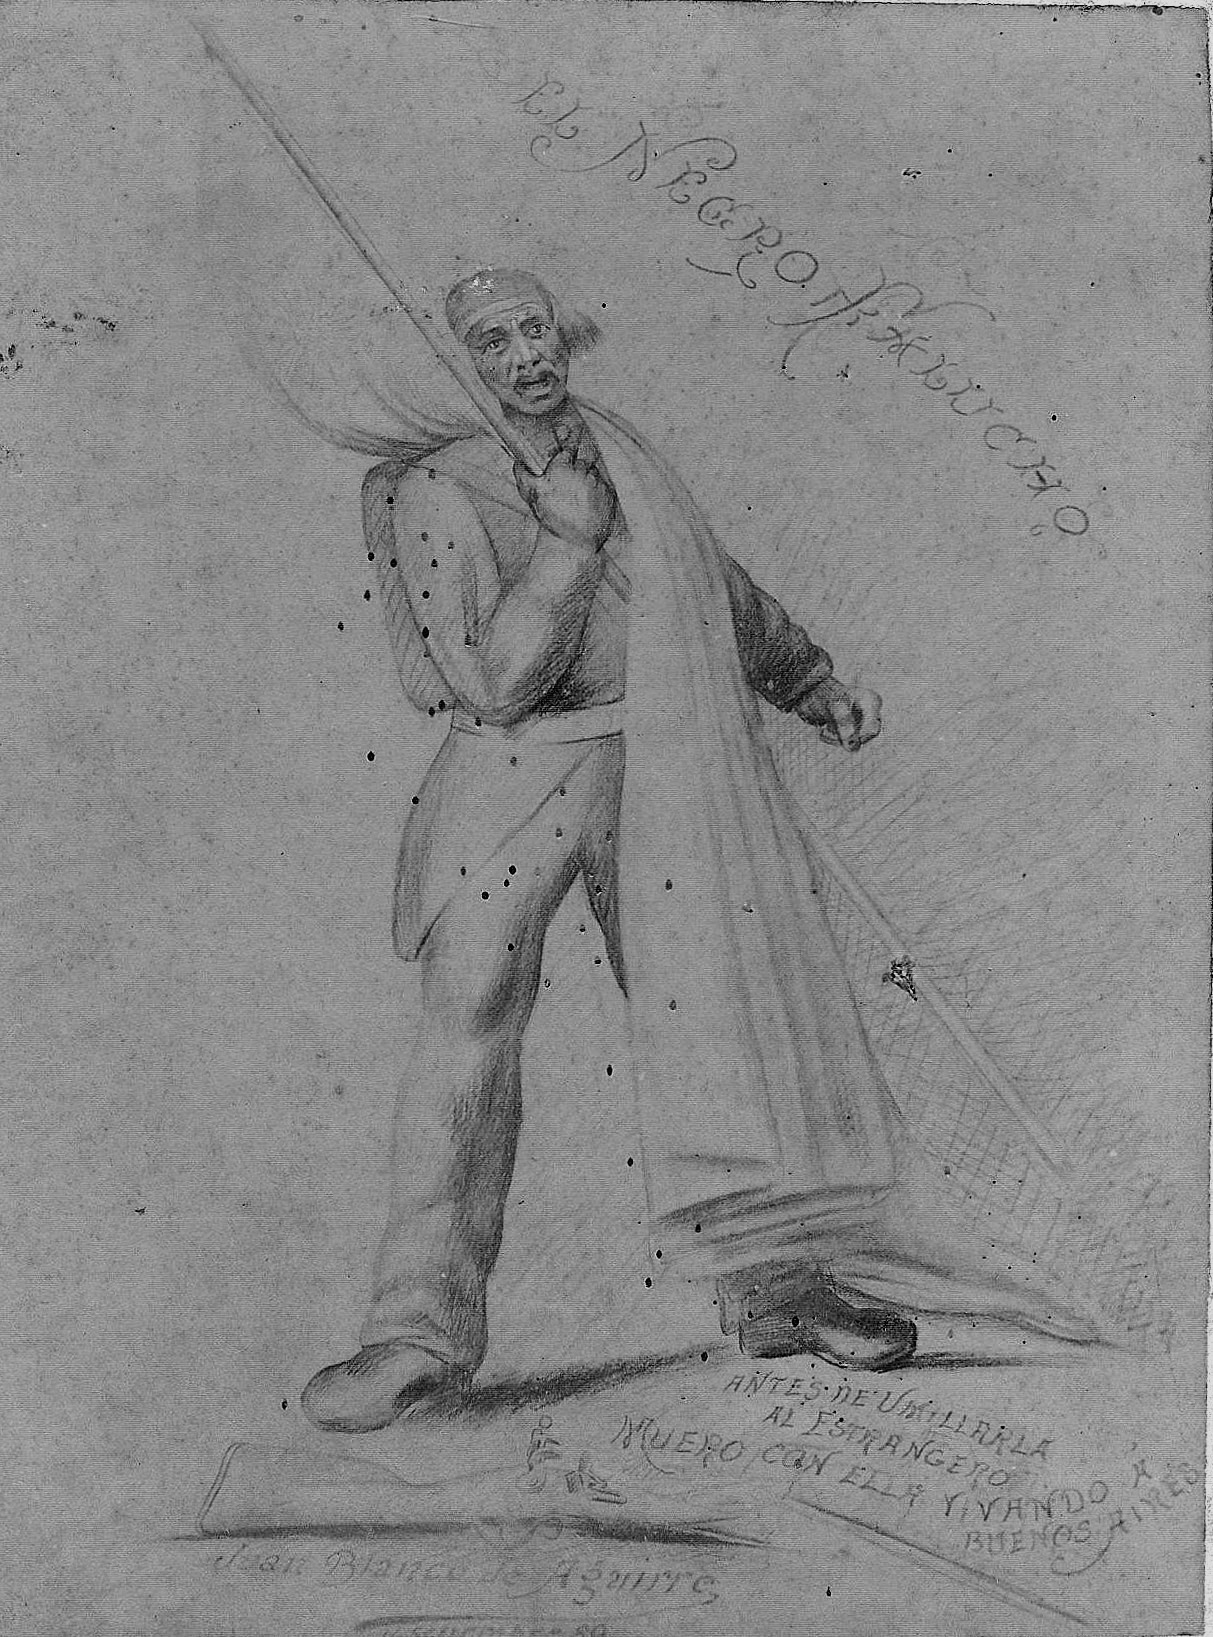 Juan Blanco de Aguirre, El negro Falucho, 1889, lápiz sobre papel, 13 x 18,9 cm, Complejo Museográfico Provincial ‘Enrique Udaondo’, Luján